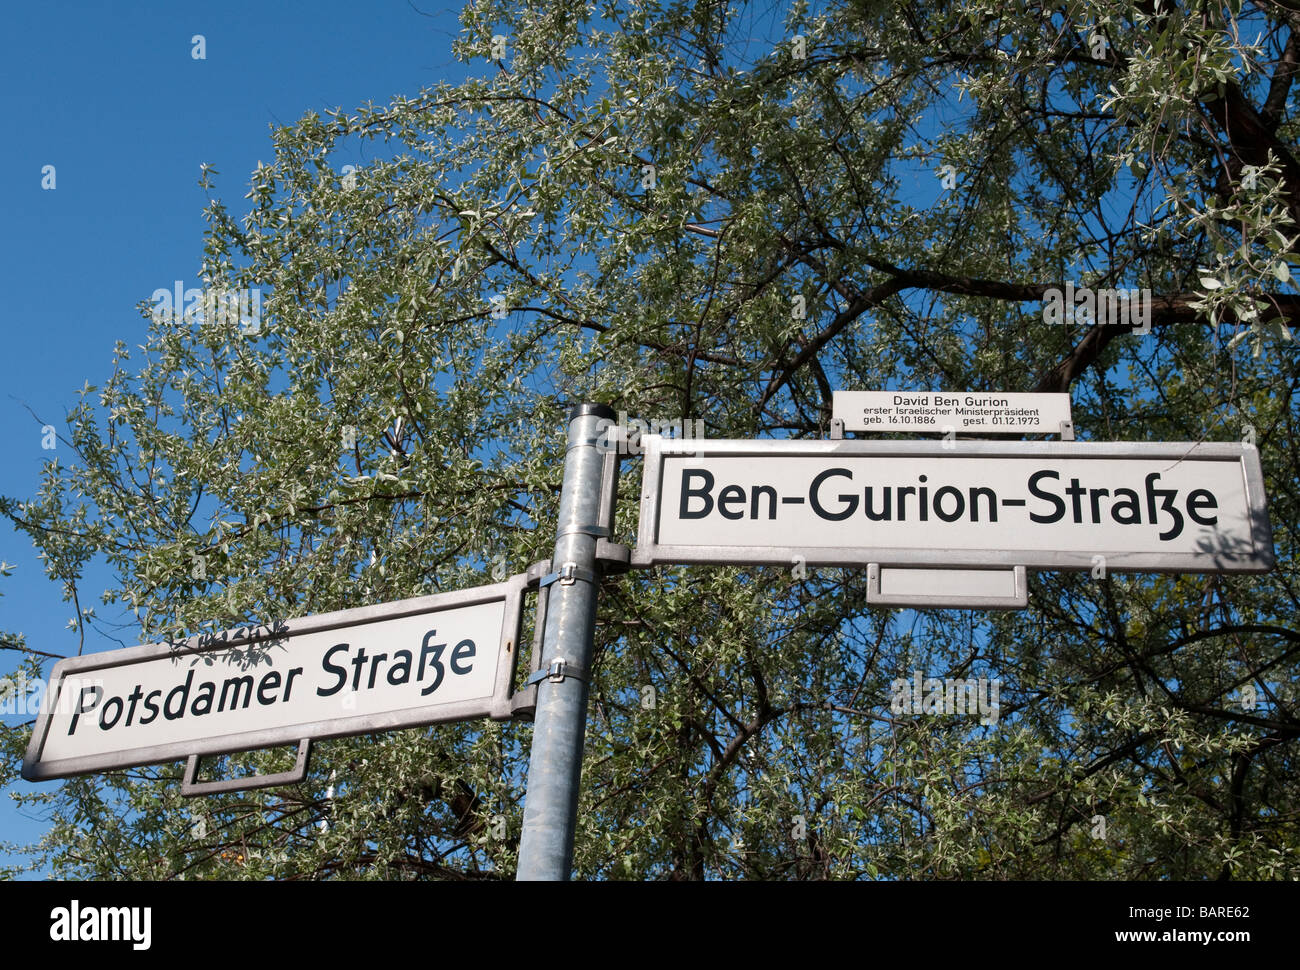 Germania Berlino strada segno Potsdamer Strasse e Ben Gourion strasse dietro il Sony Center Foto Stock